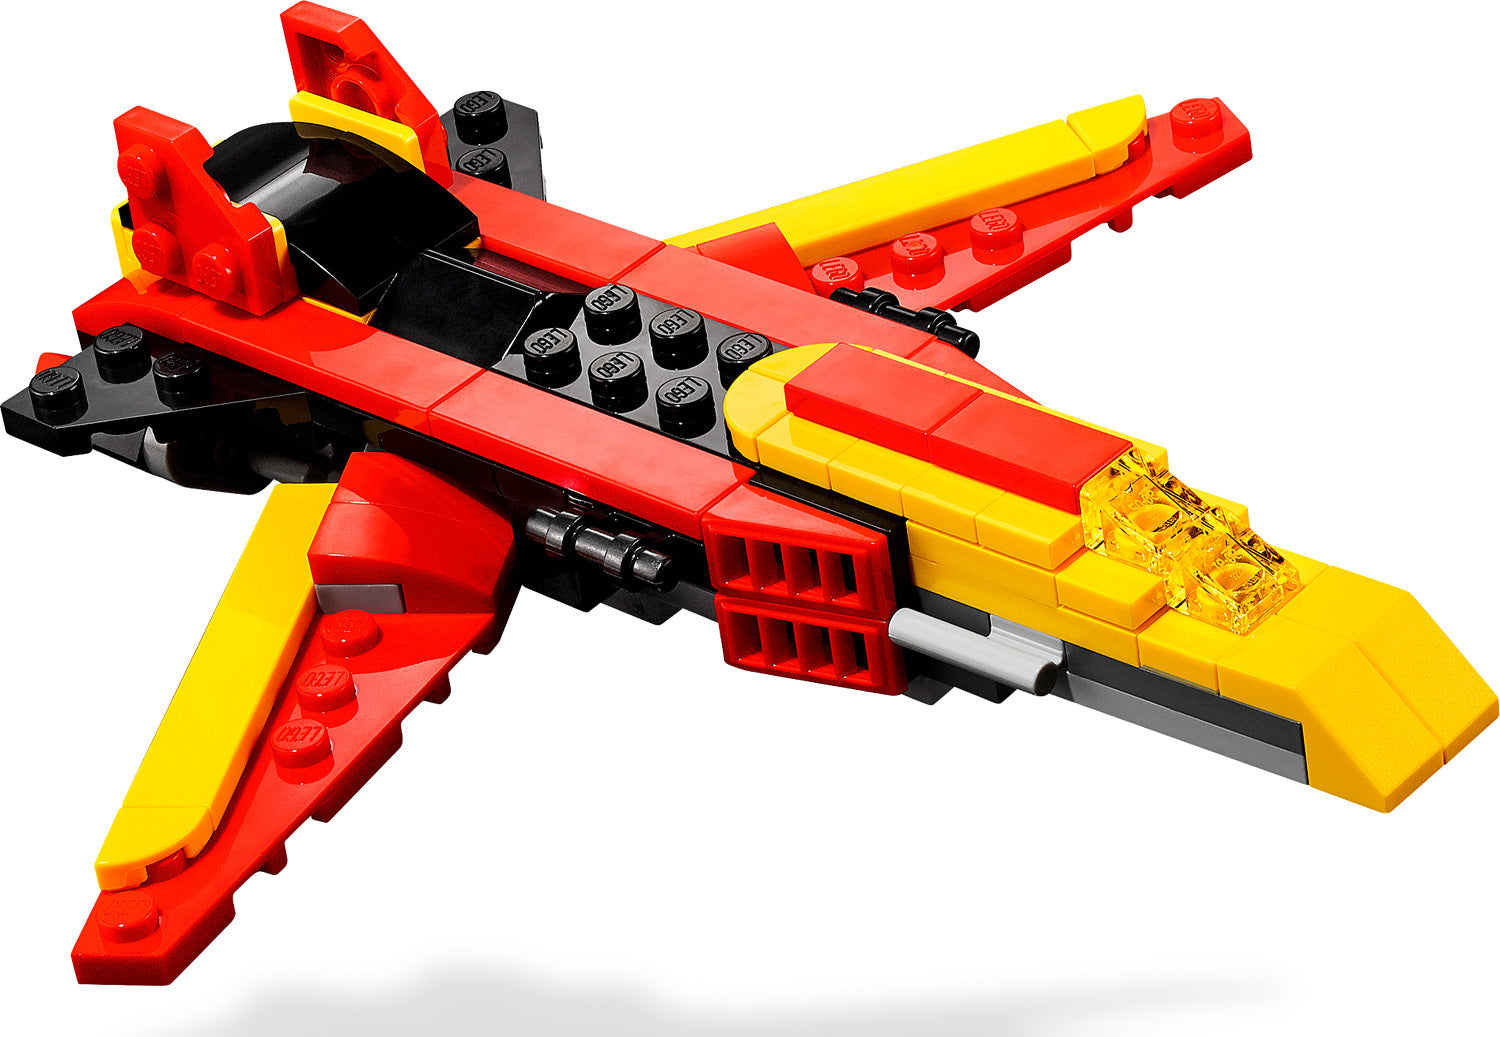 LEGO® Super Robot